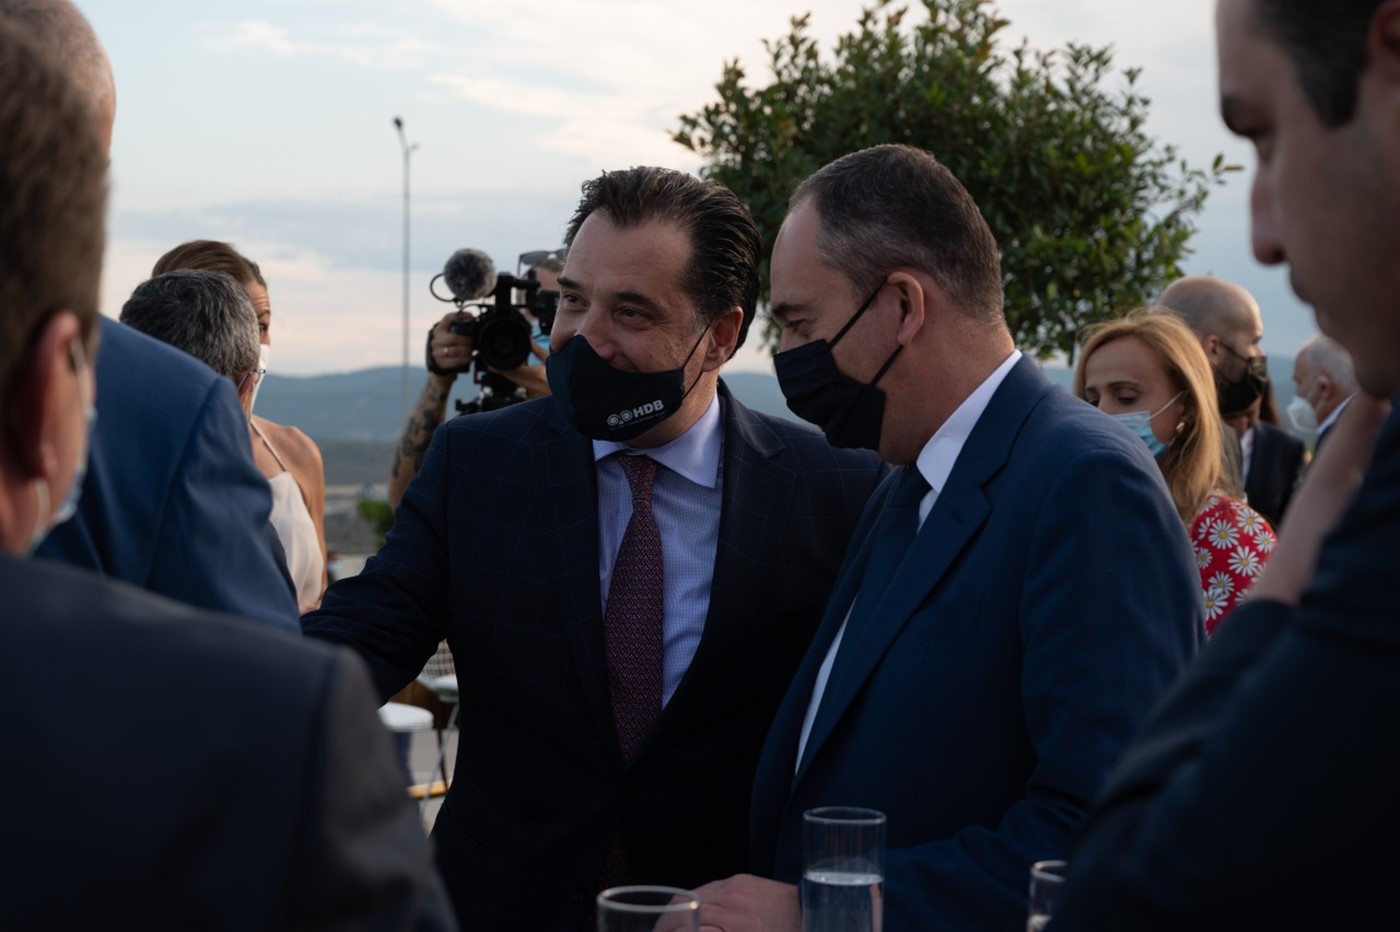 Ο Υπουργός Ανάπτυξης & Επενδύσεων, κ. Άδωνις Γεωργιάδης με τον Υπουργό Ναυτιλίας και Νησιωτικής Πολιτικής, κ. Γιάννη Πλακιωτάκη